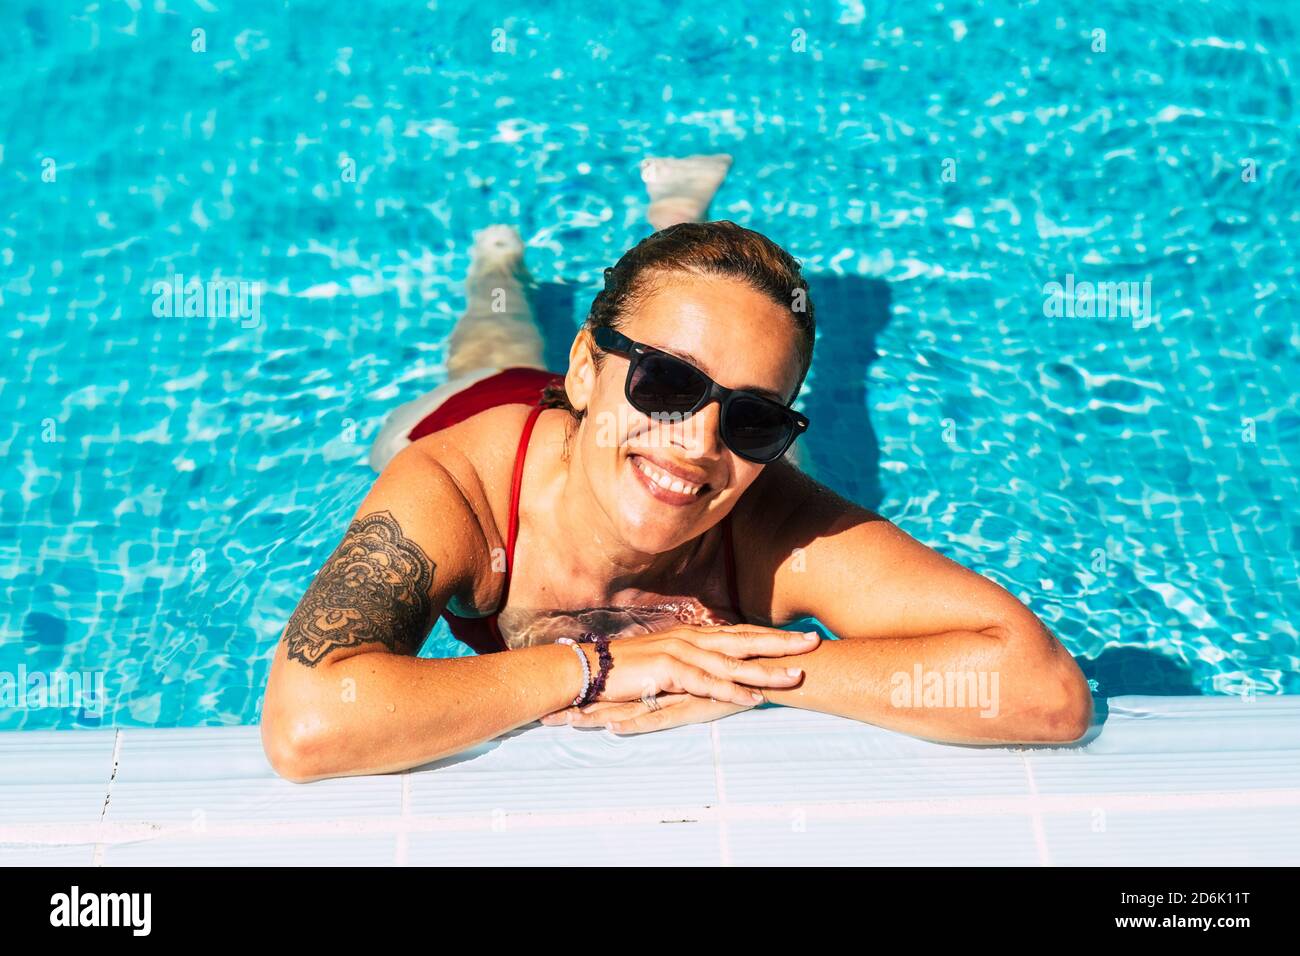 Allegra bella donna ritratto in piscina - vacanza estate vacanza in resort per giovani felici graziosi in bikini - stile di vita sano e enjo Foto Stock